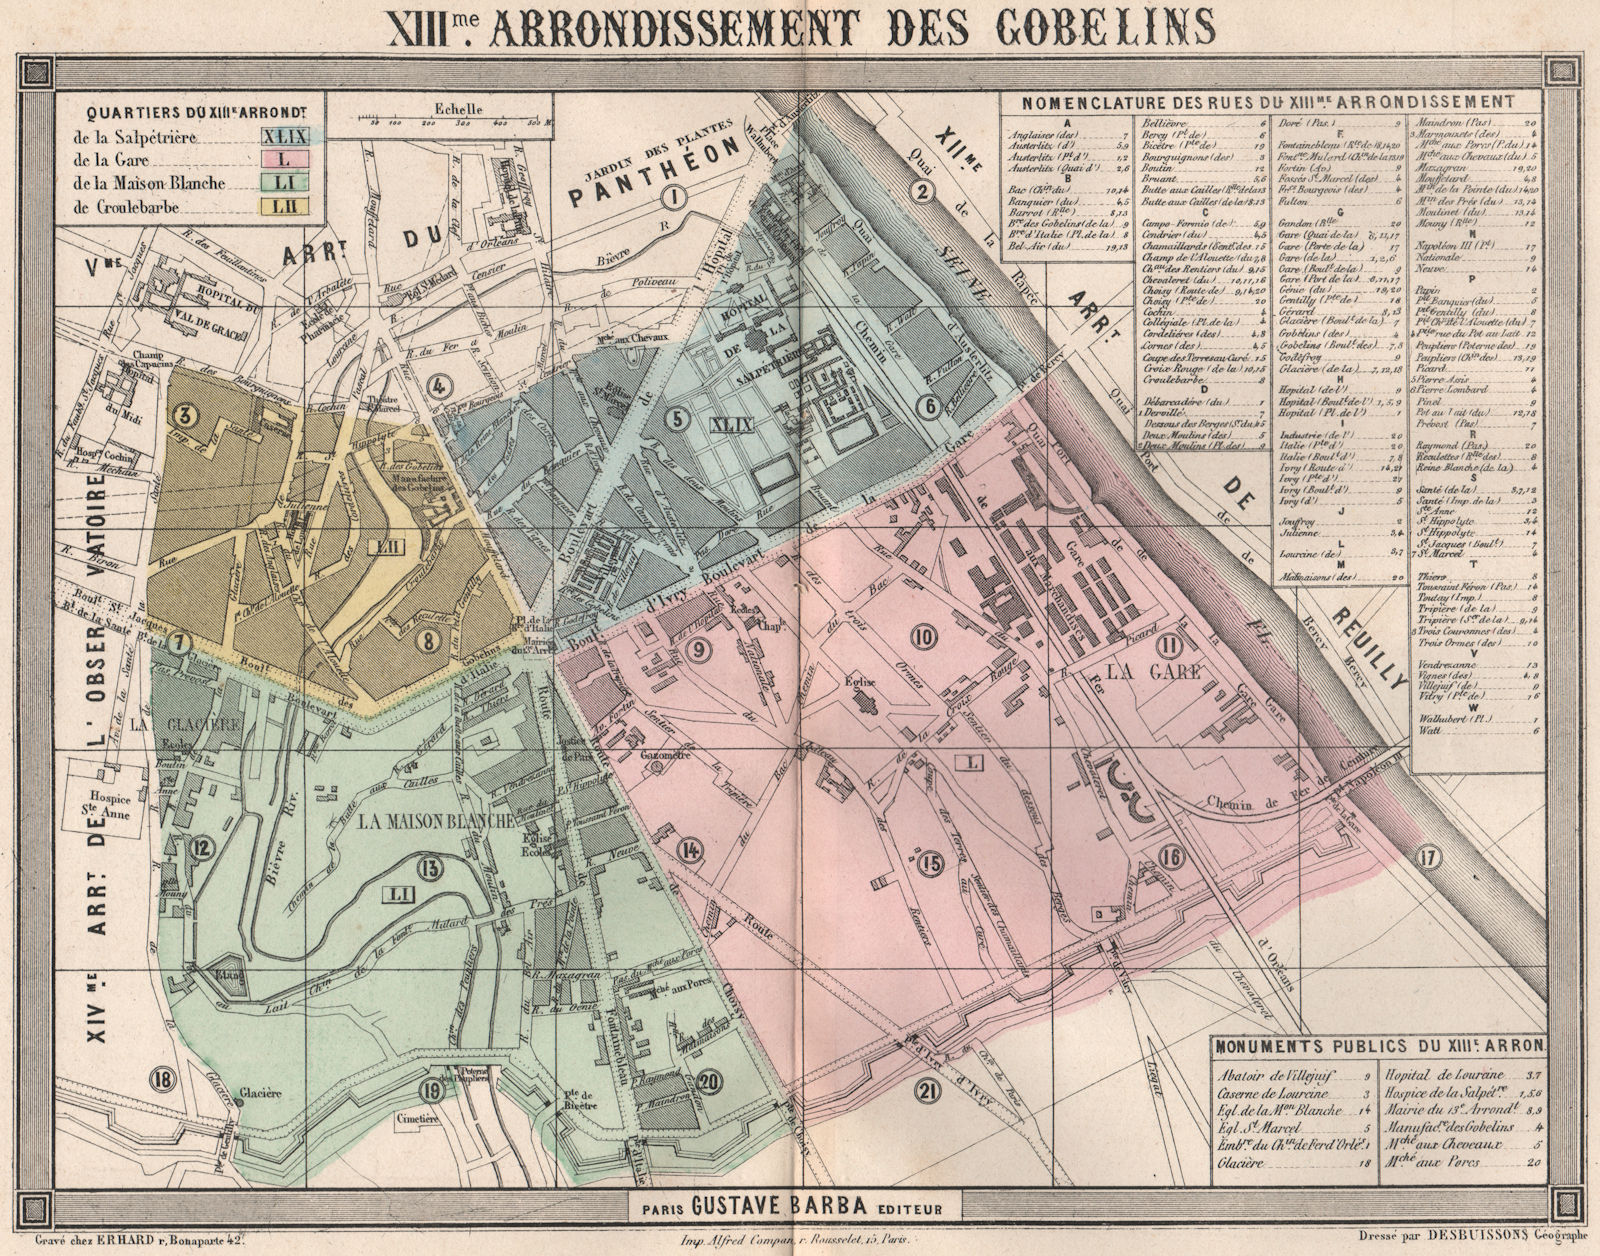 PARIS 13e 13th XIIIme arrondissement des Gobelins. BARBA 1860 old antique map